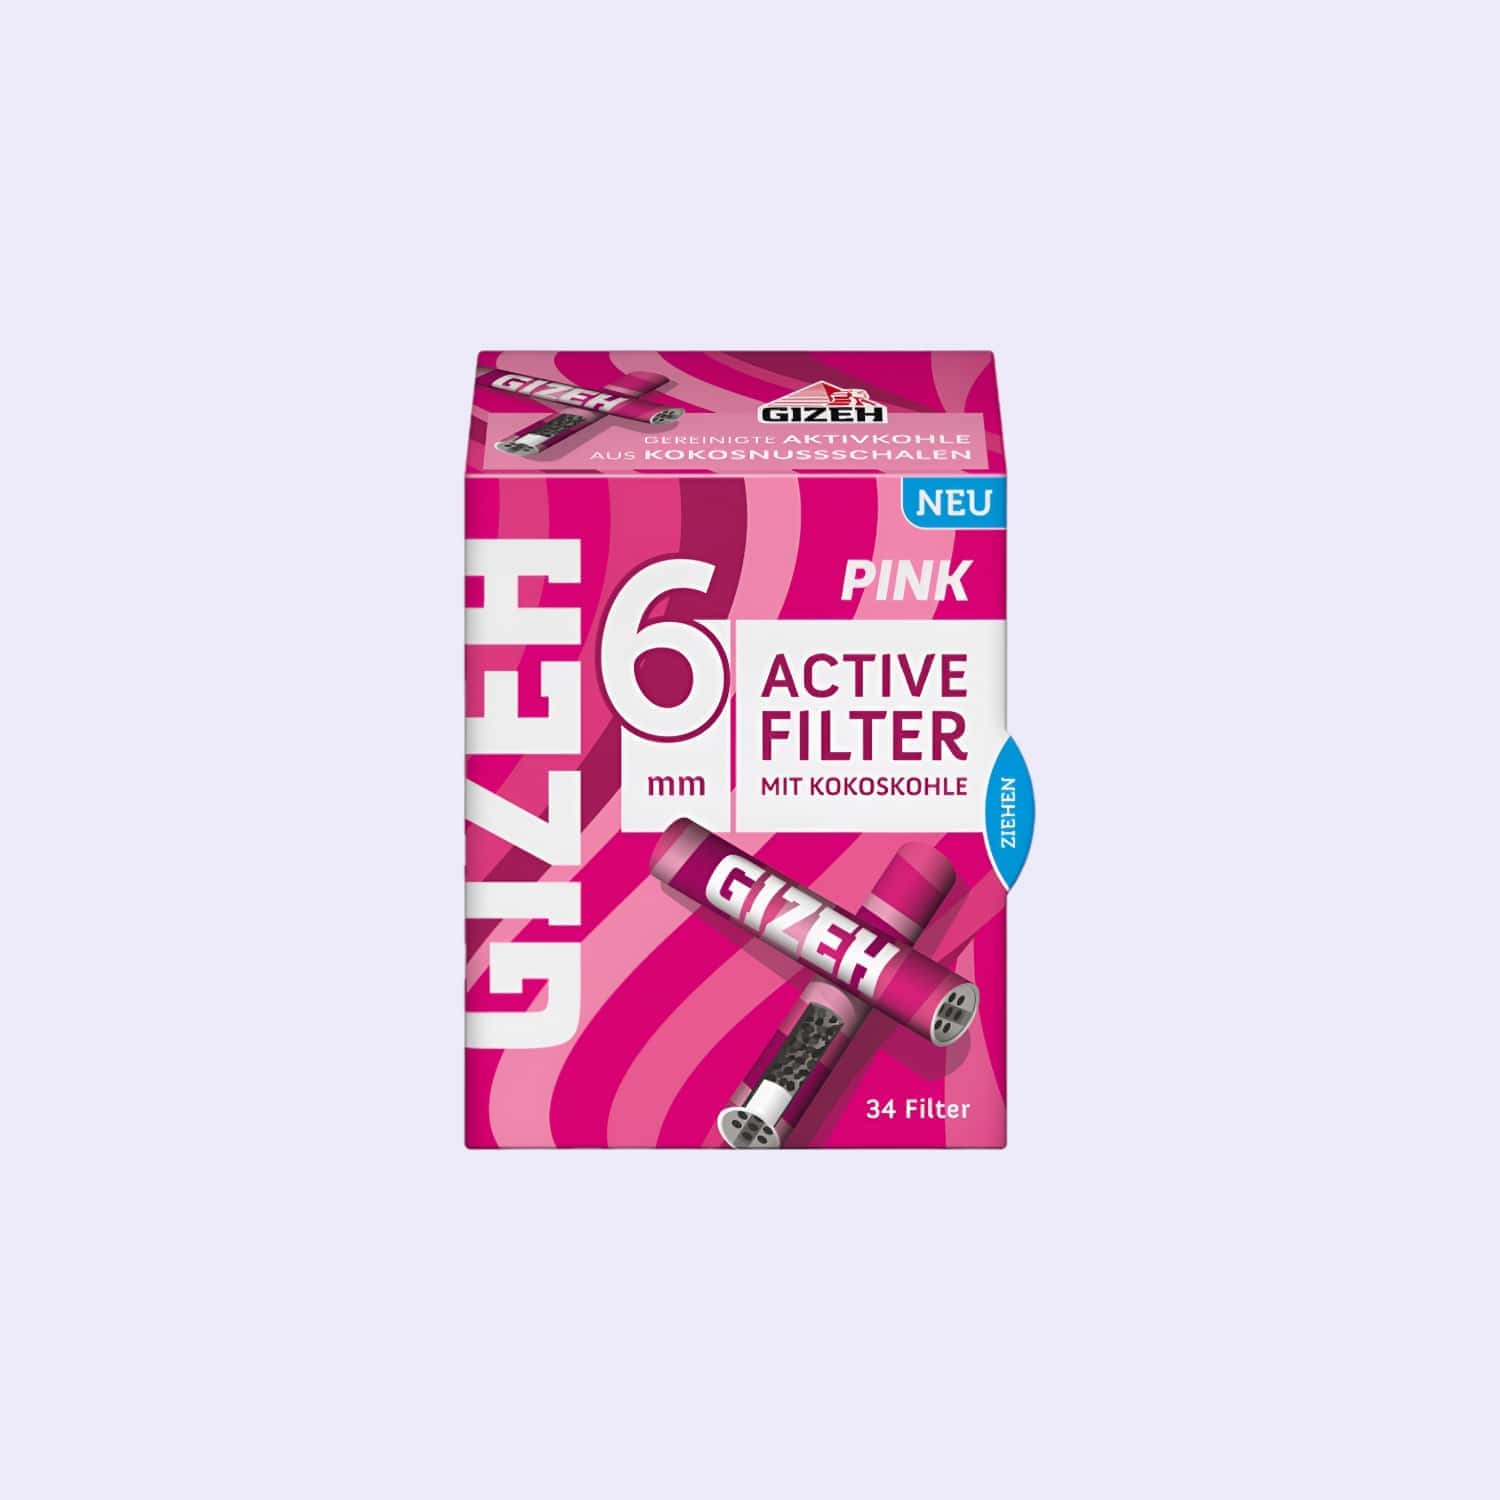 Dieses Bild zeigt die GIZEH Pink Active Filter 6mm 34pcs